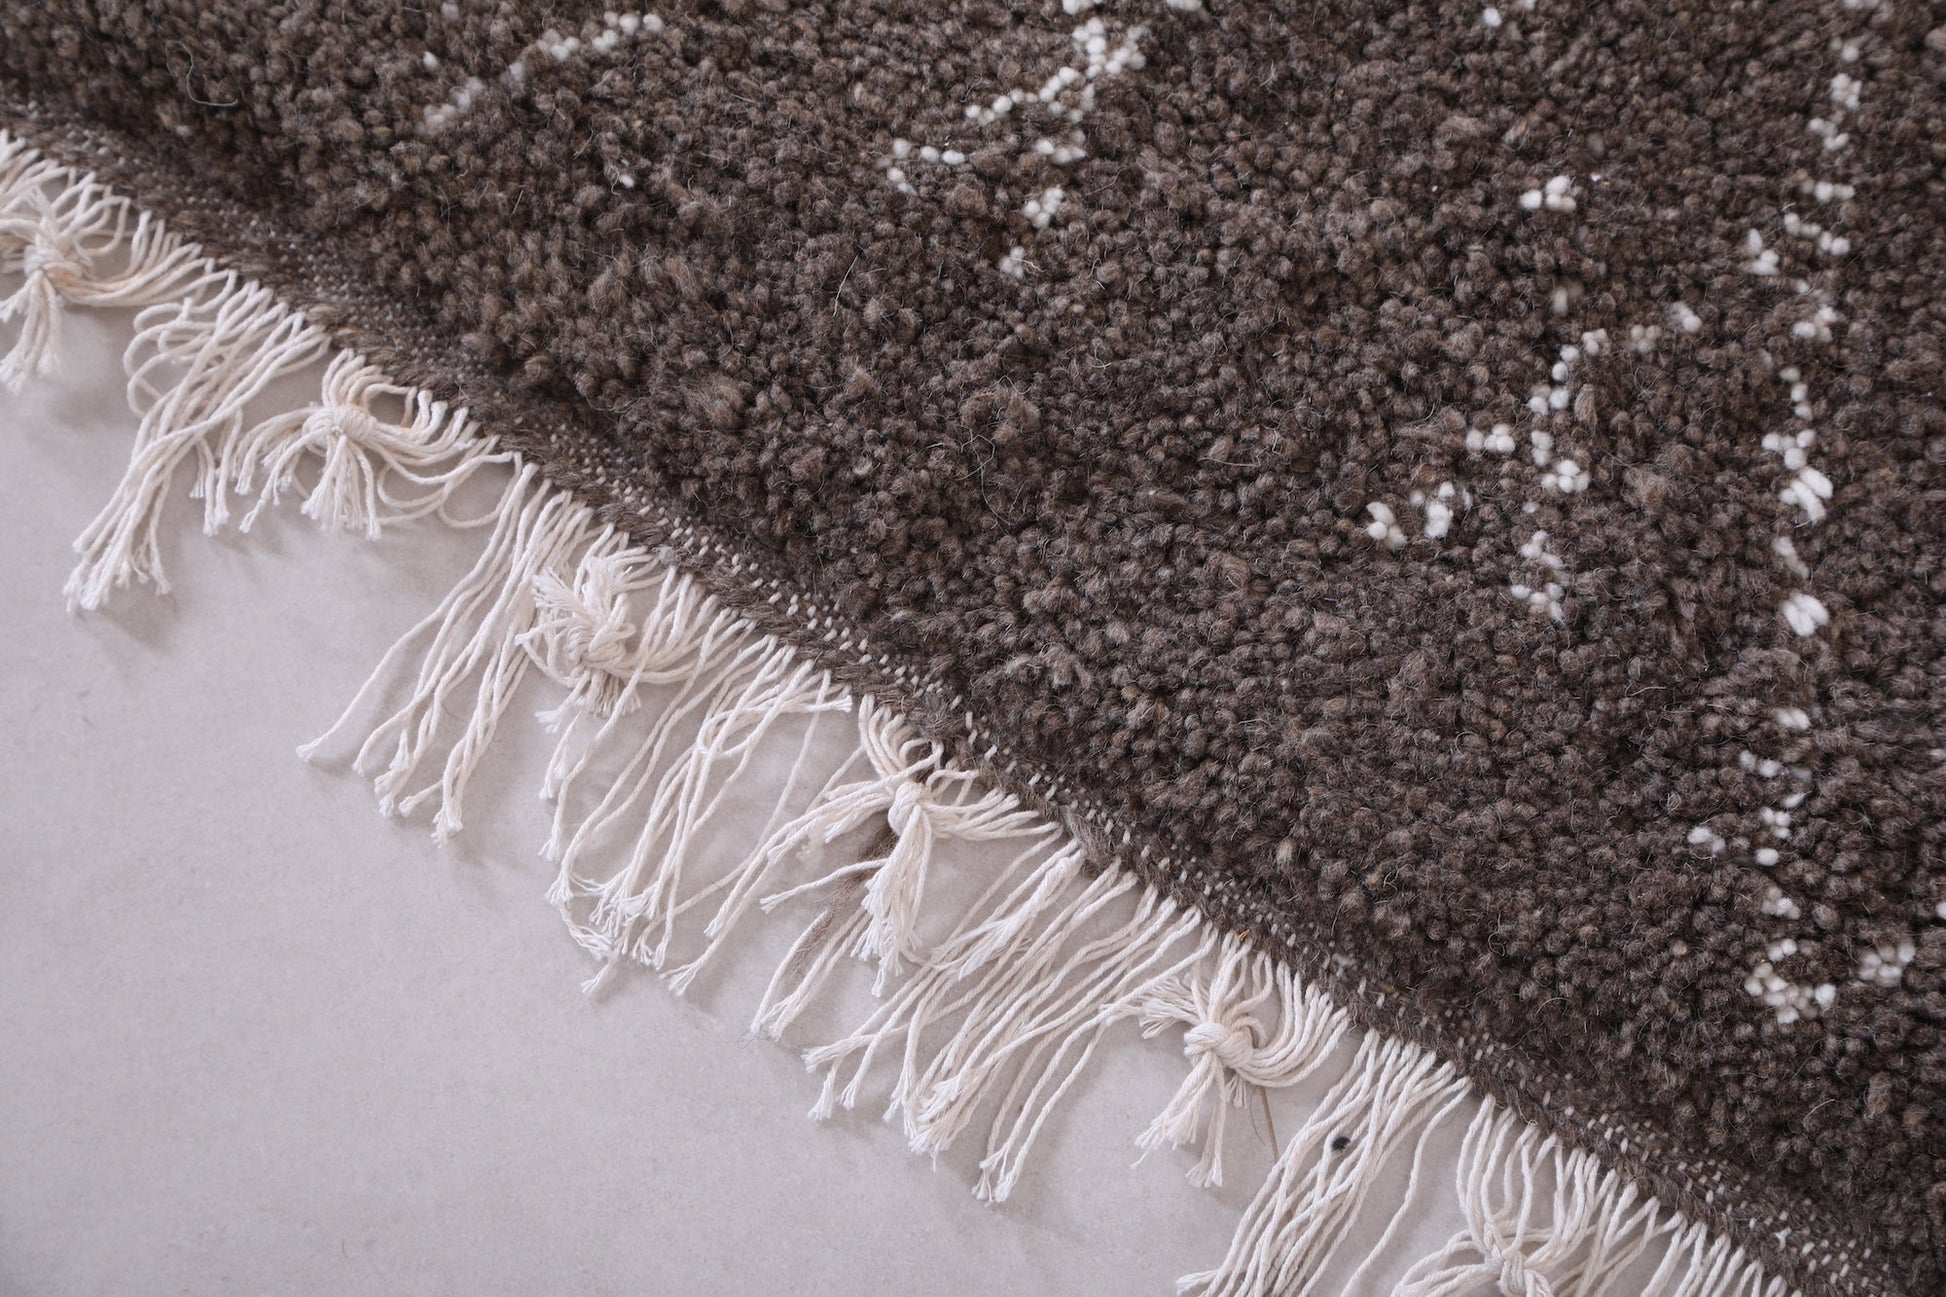 Custom Moroccan grey wool rug, Berber handmade carpet